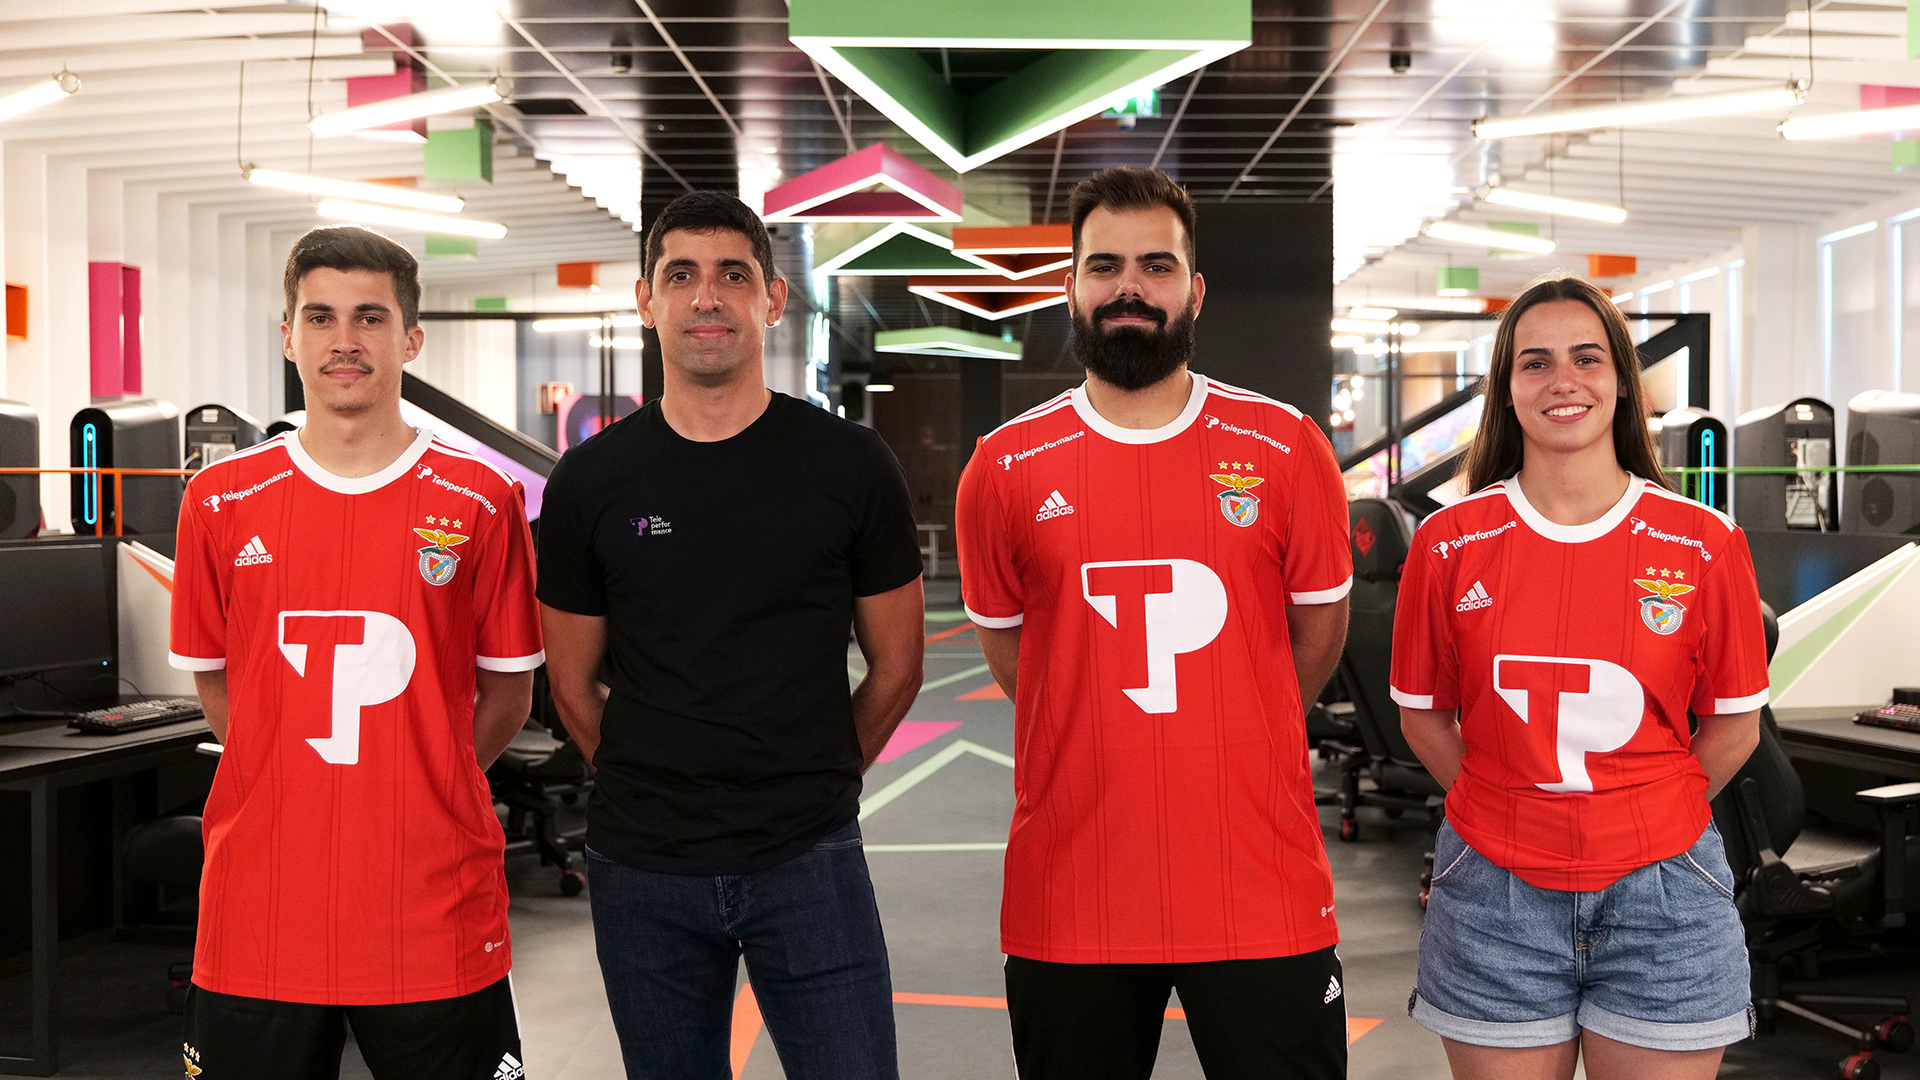 Patrocinadora de eSports: a Teleperformance está no Benfica